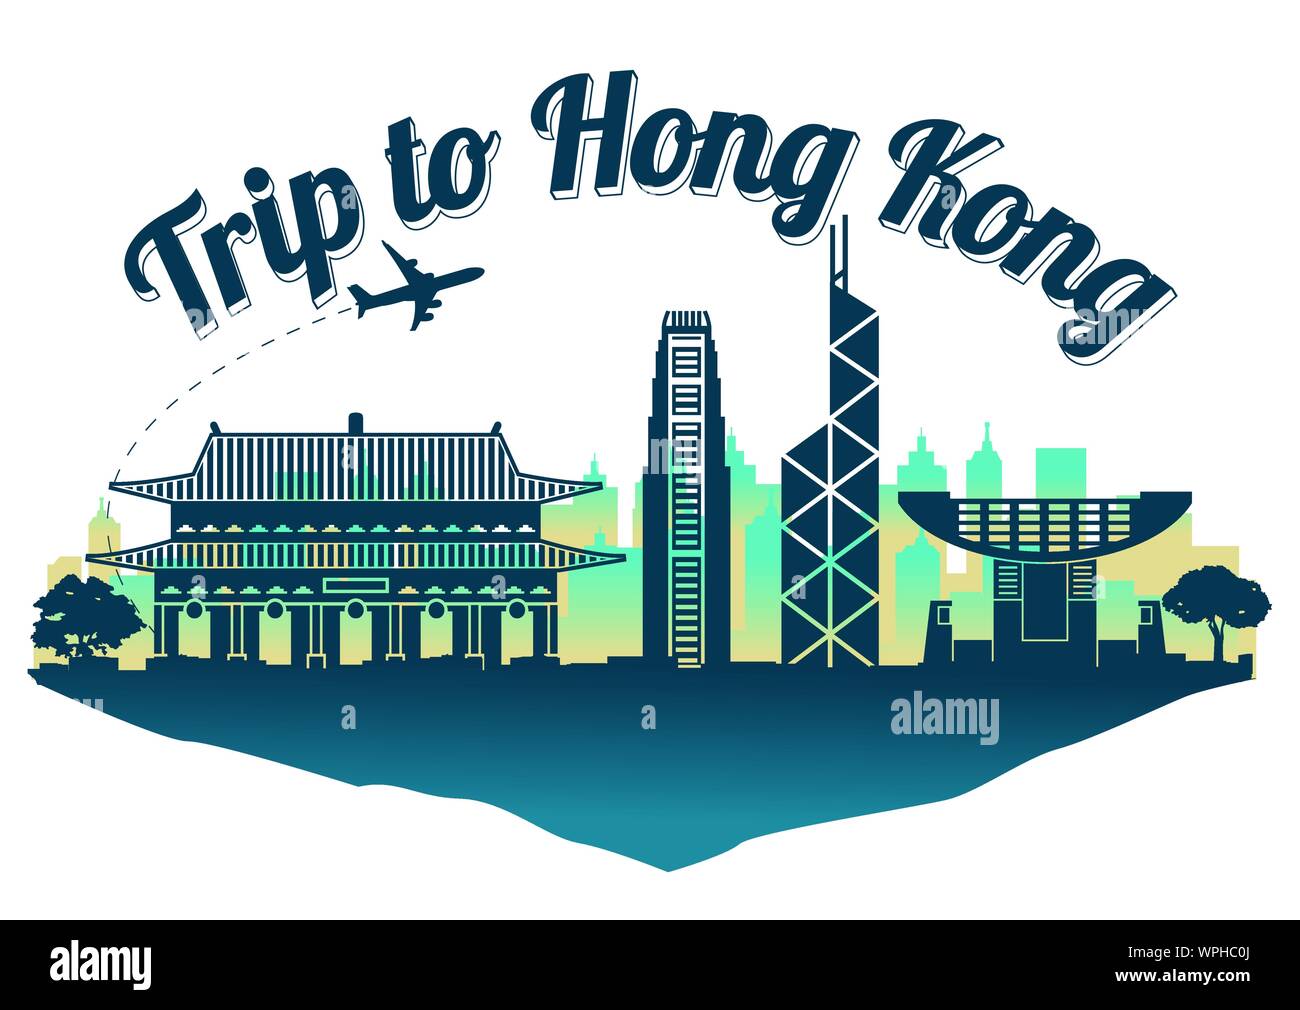 Hong Kong Wahrzeichen Silhouette Style auf float Insel, Reise und Tourismus, dunkelblau grün, Vector Illustration Stock Vektor